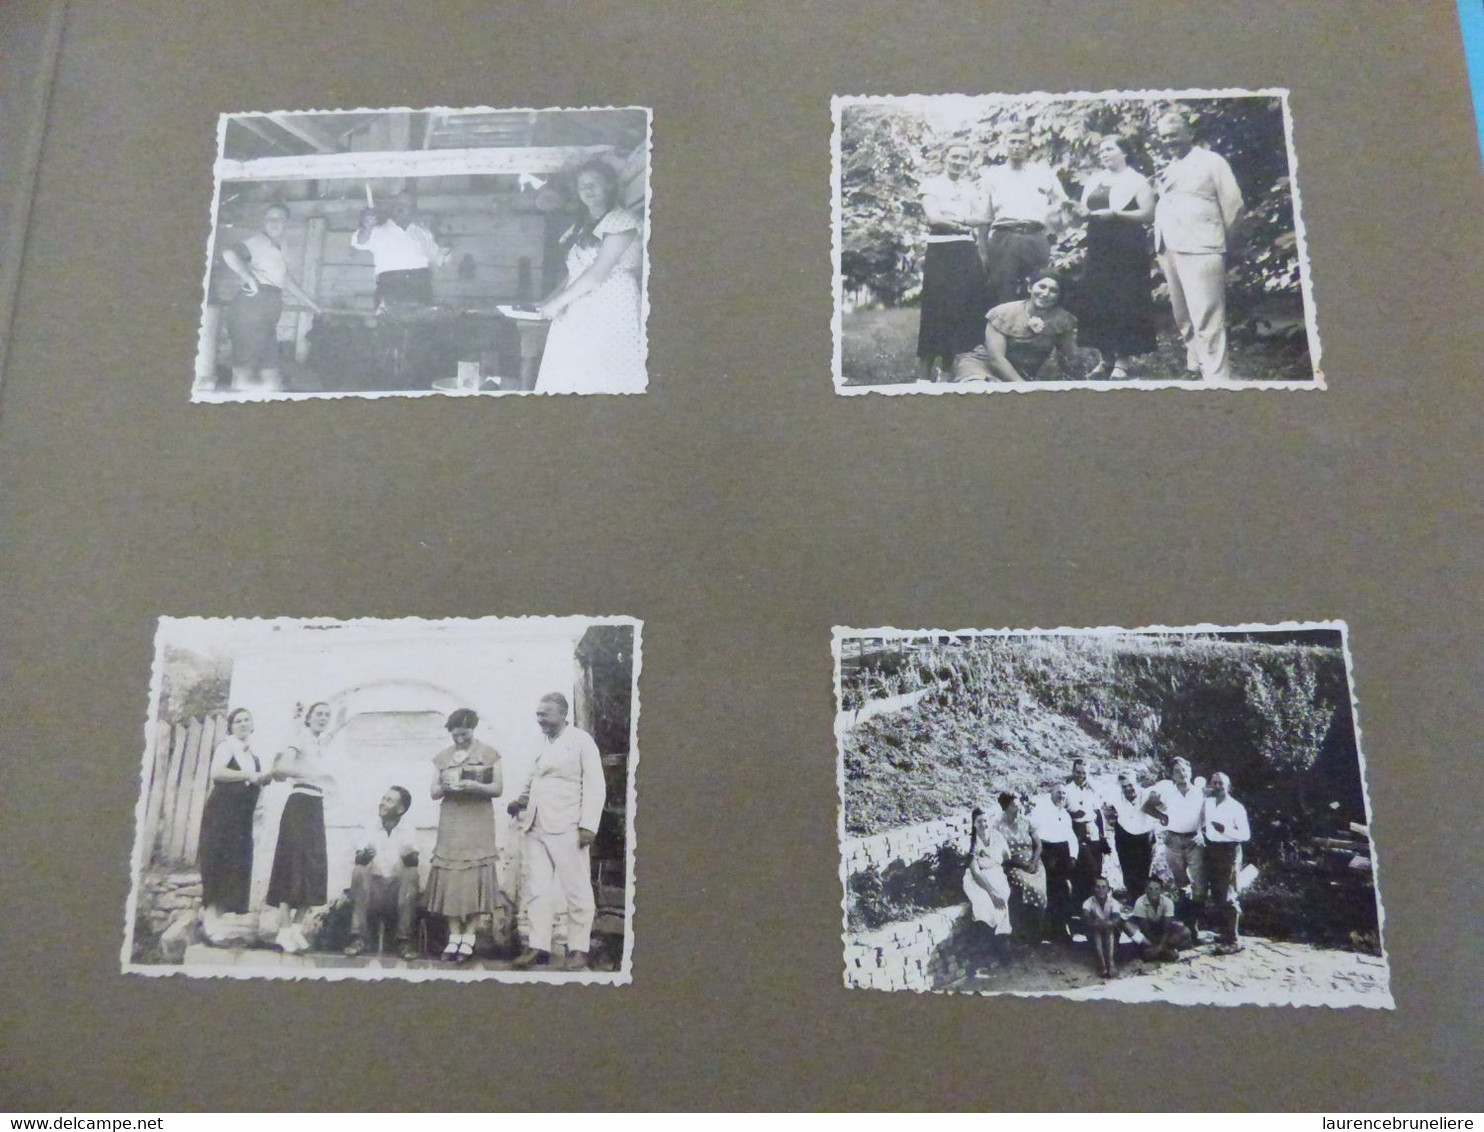 MISSION GEOLOGIQUE  KURUGA PRES DE BOR (SERBIE)   NOVEMBRE 1934 -  André LAUNAY INGENIEUR DES MINES  A SAINT-NAZAIRE - Places